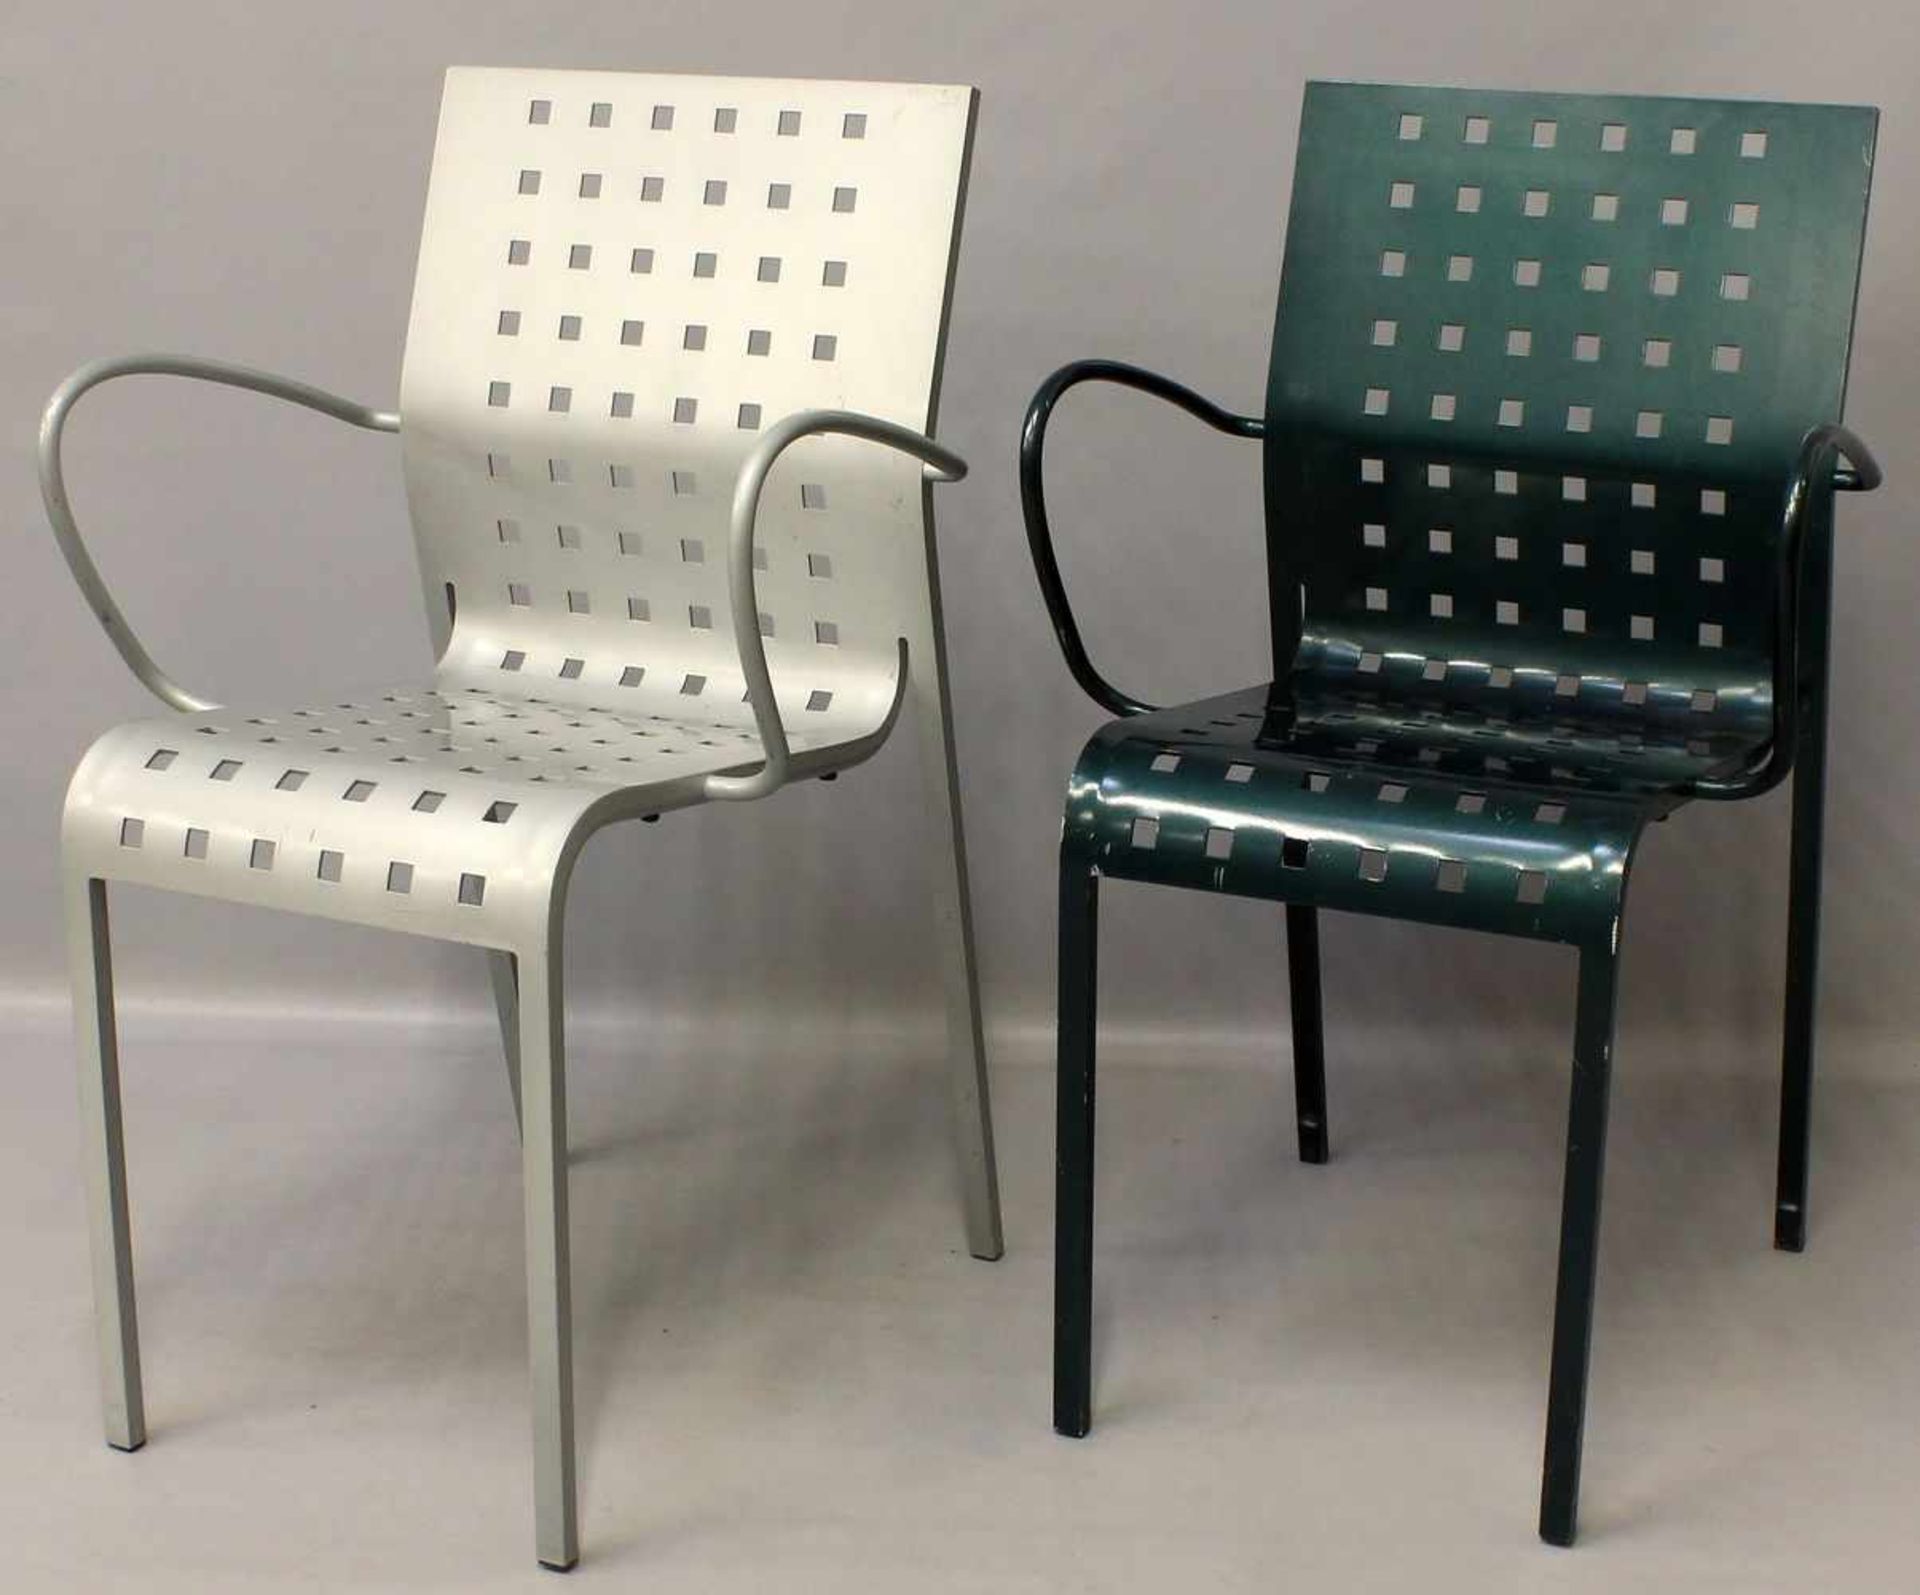 Arosio, Pietro (geb. 1946 Lissone)Zwei Stühle "Mirandolina" mit Armlehnen. Metall, silbern bzw. grün